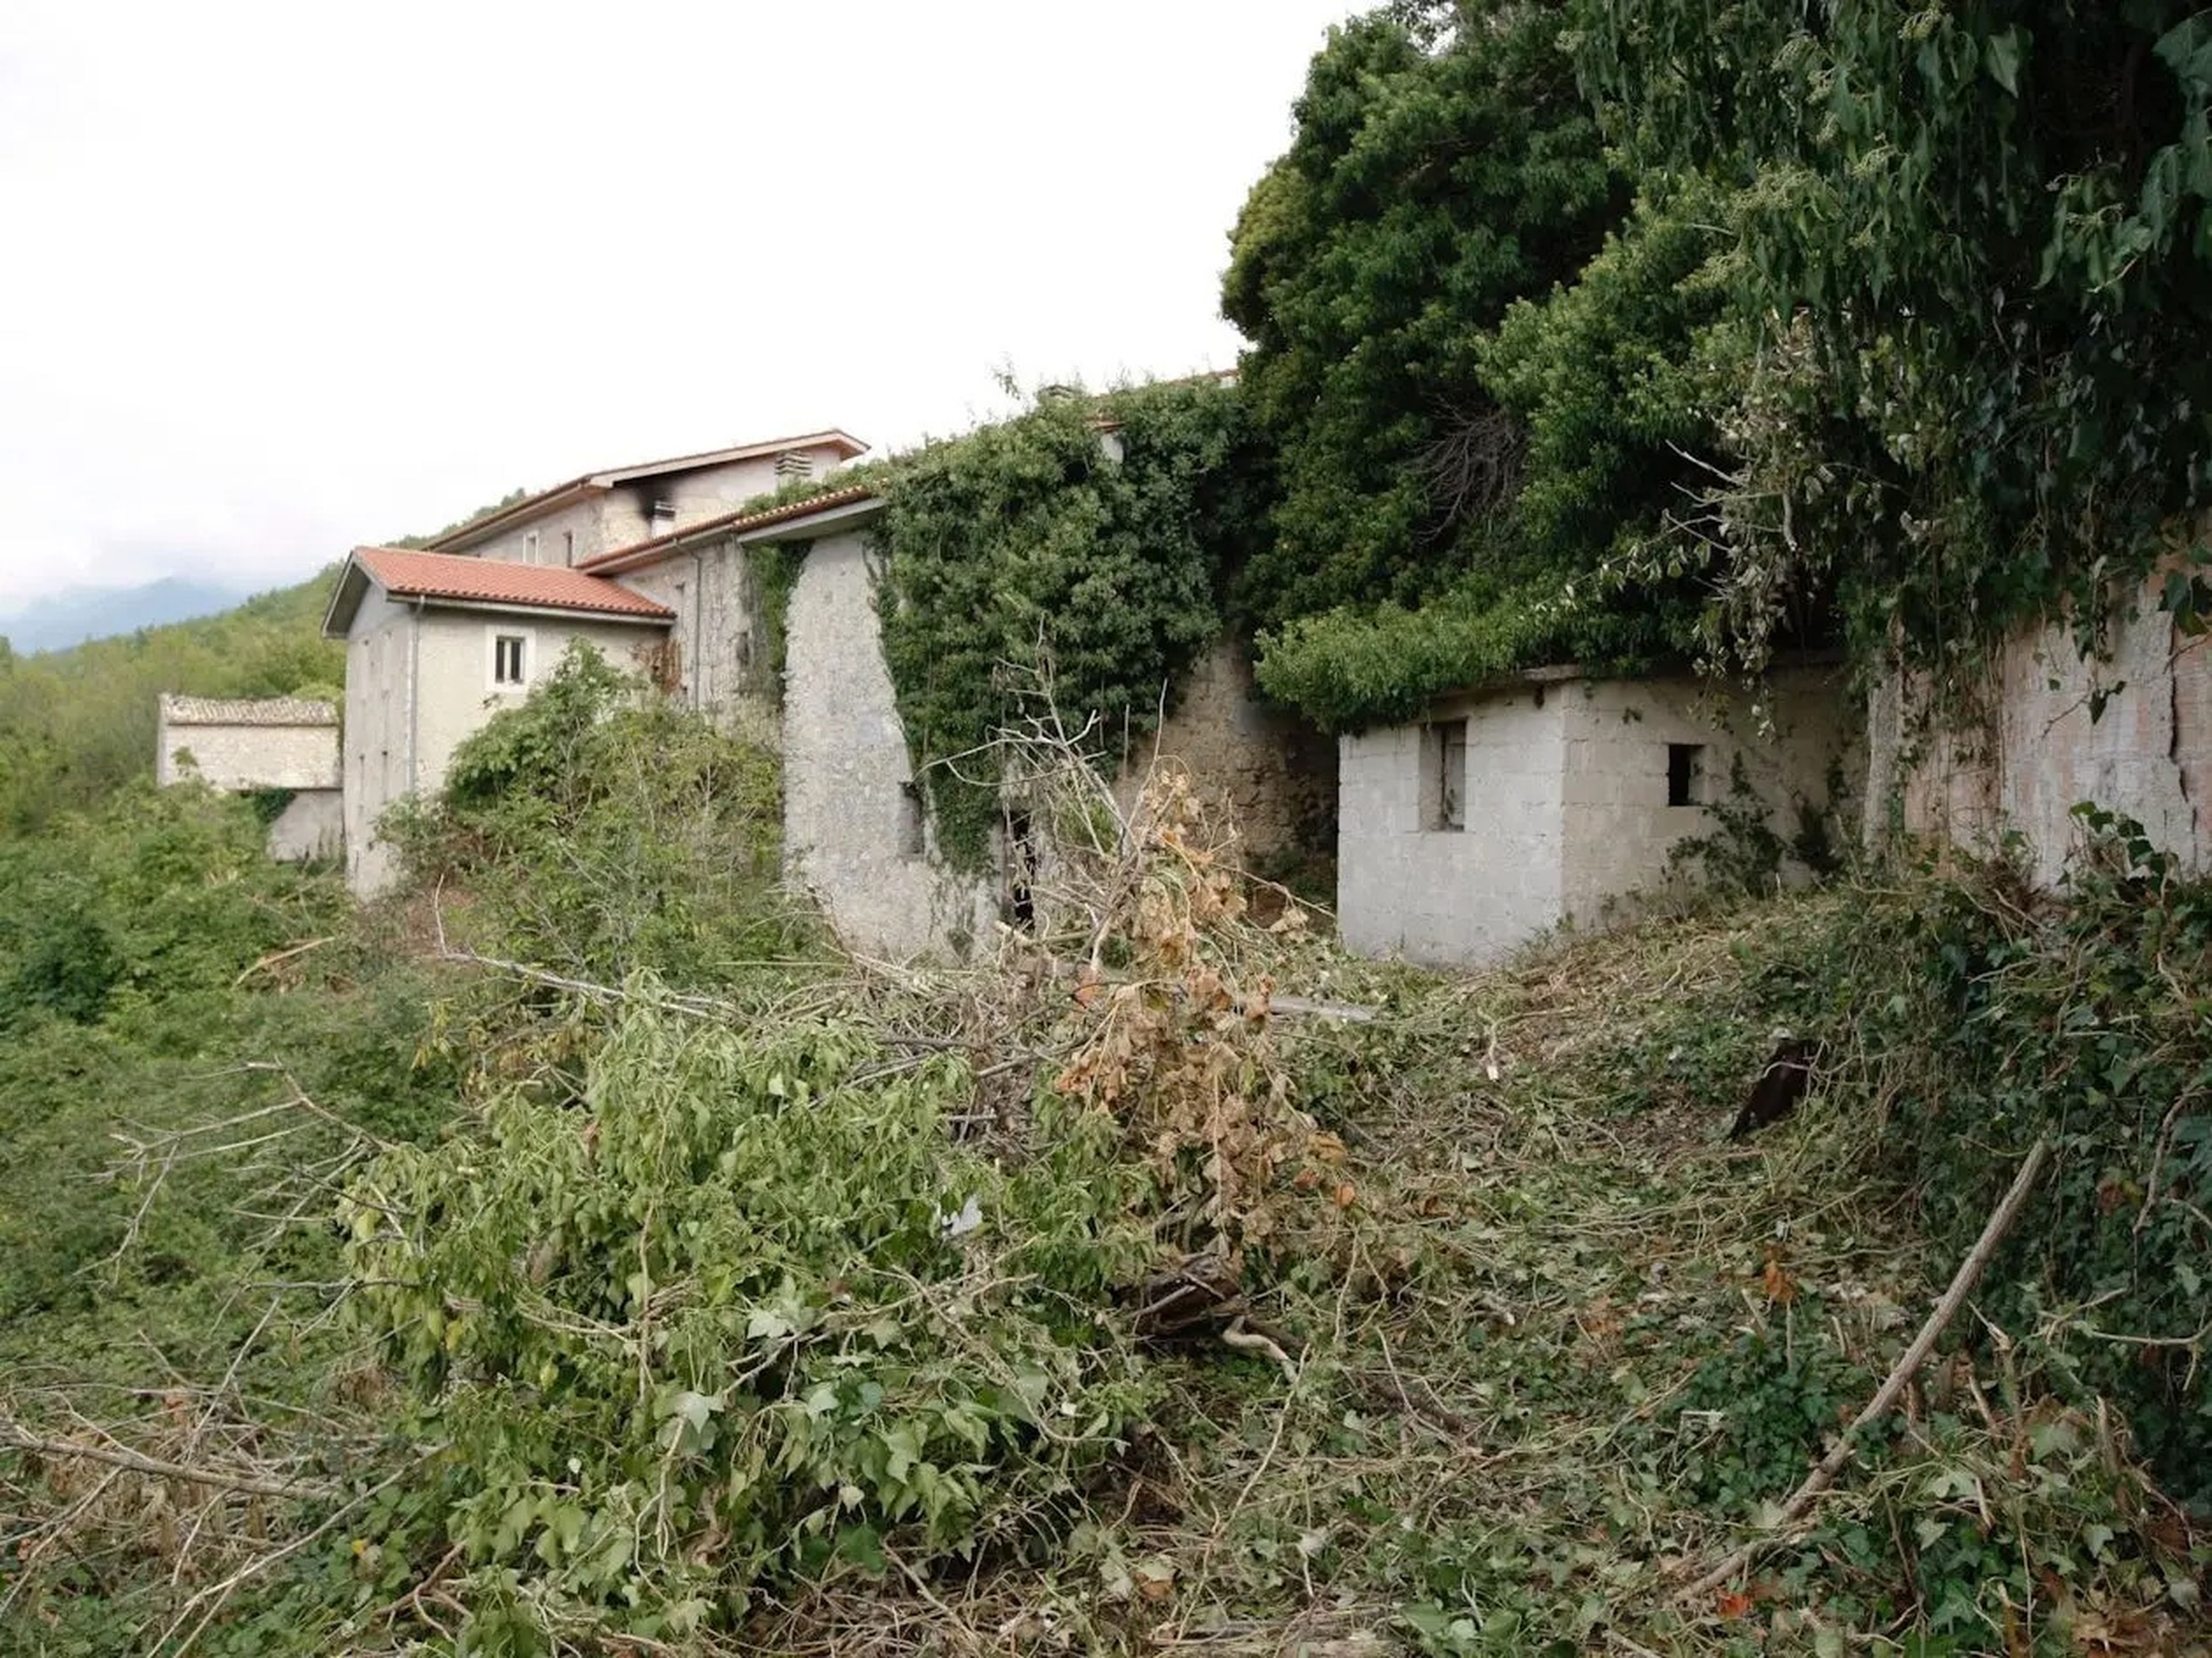 an overgrown Italian village